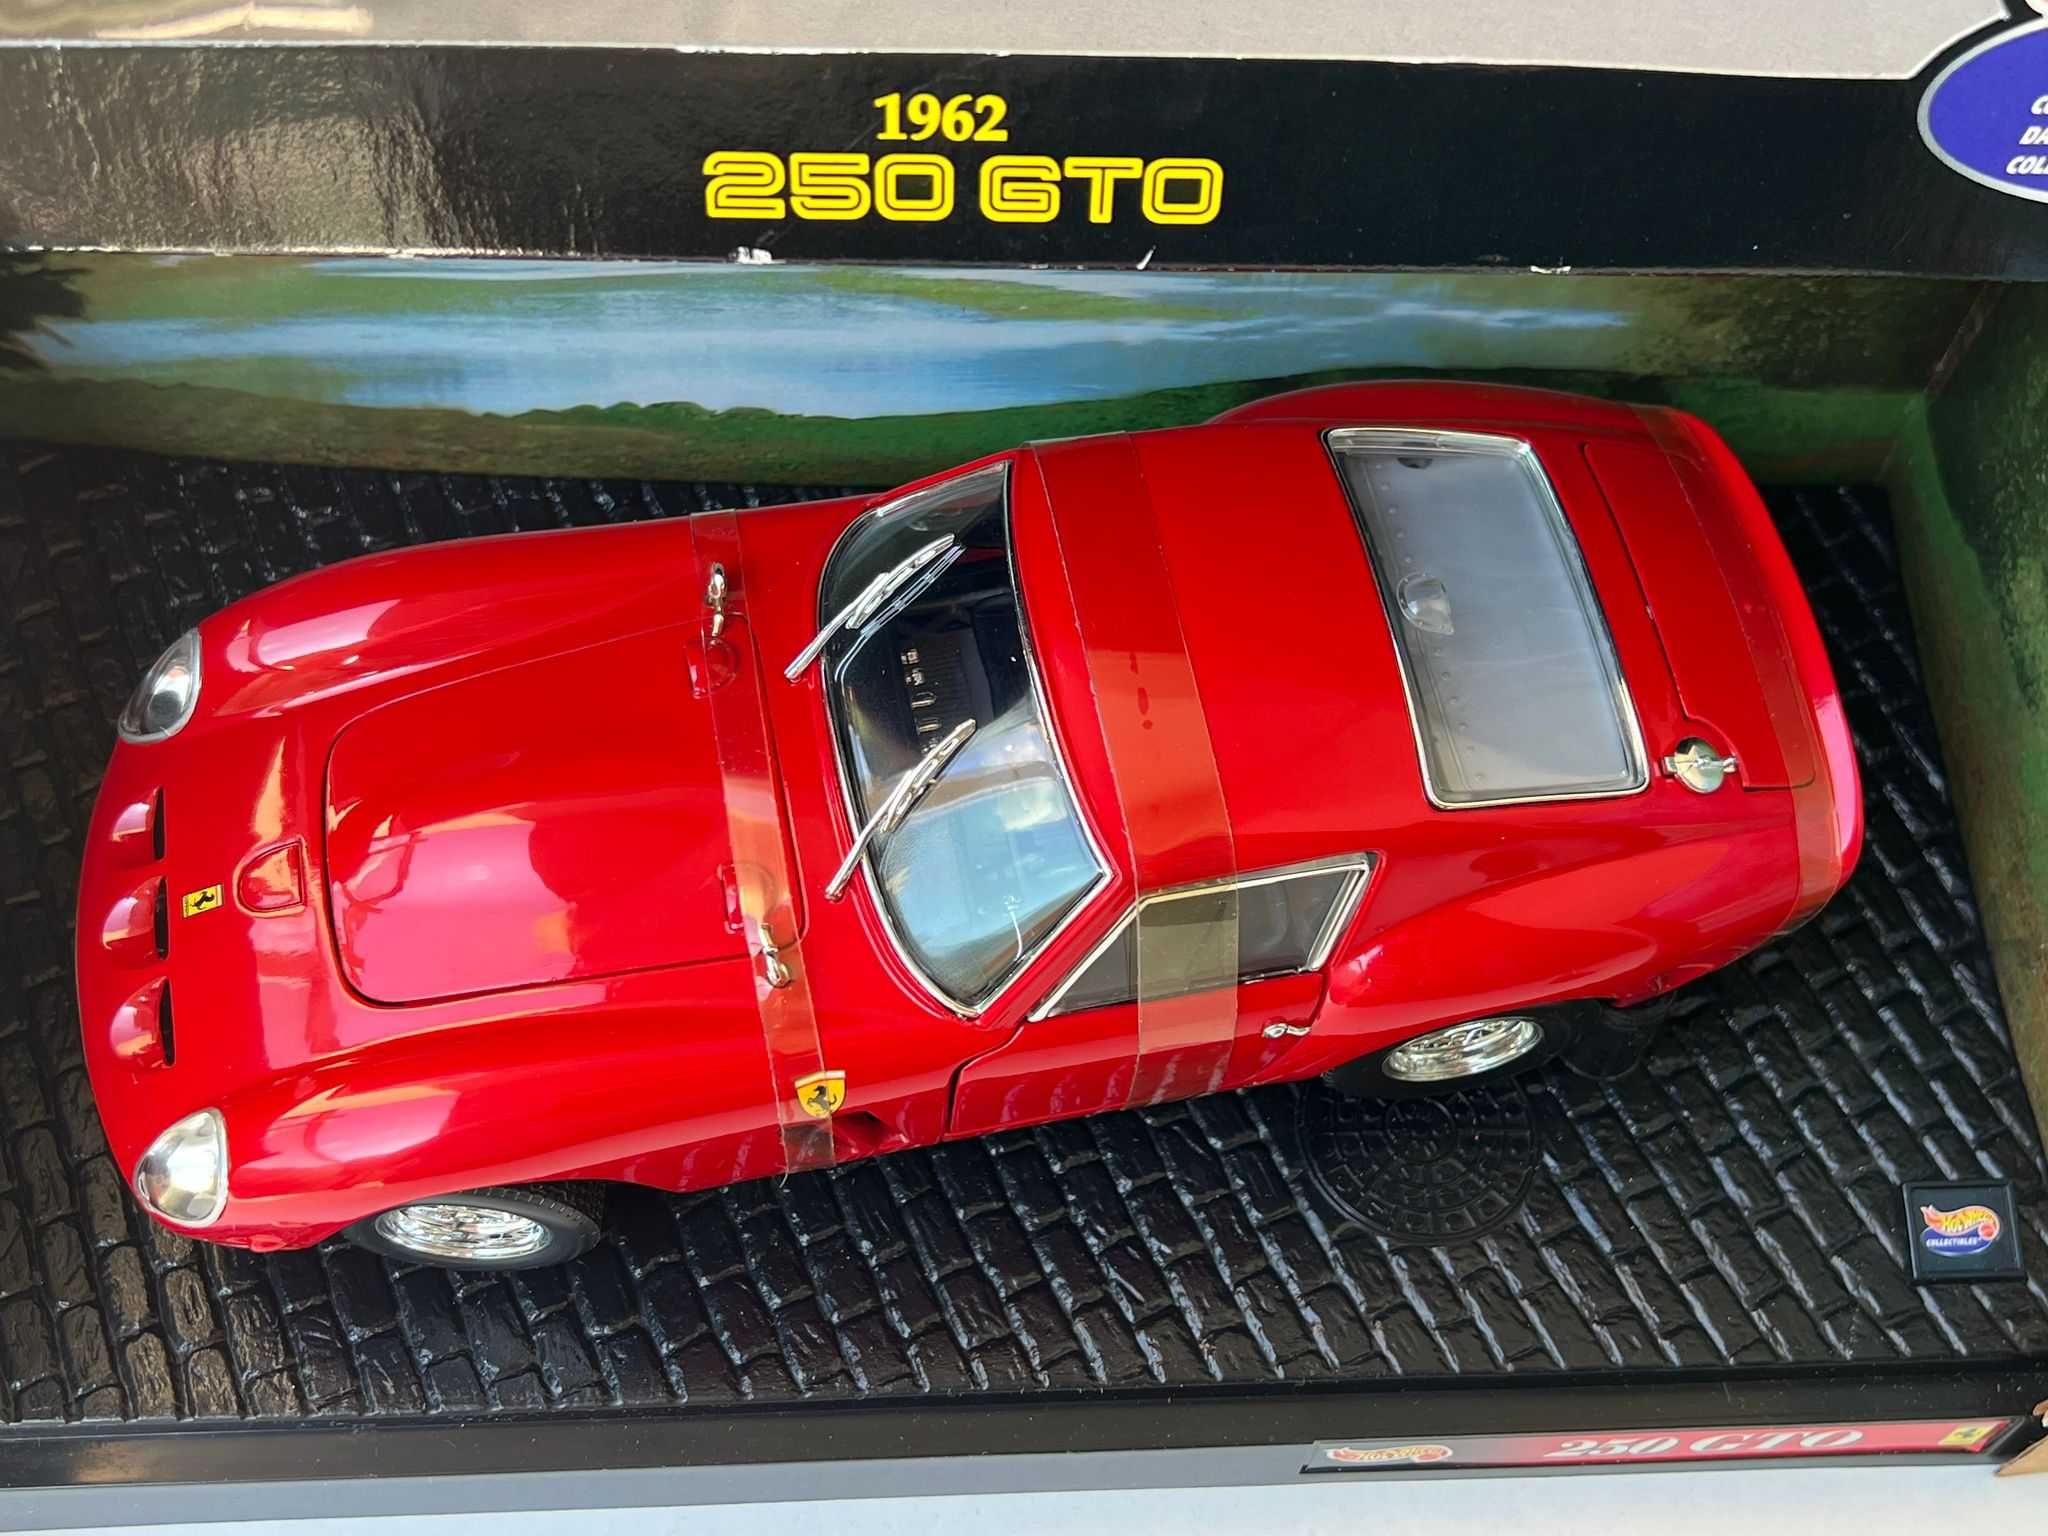 Macheta Auto 1/18 Hotwheels Ferrari 250 GTO 1962